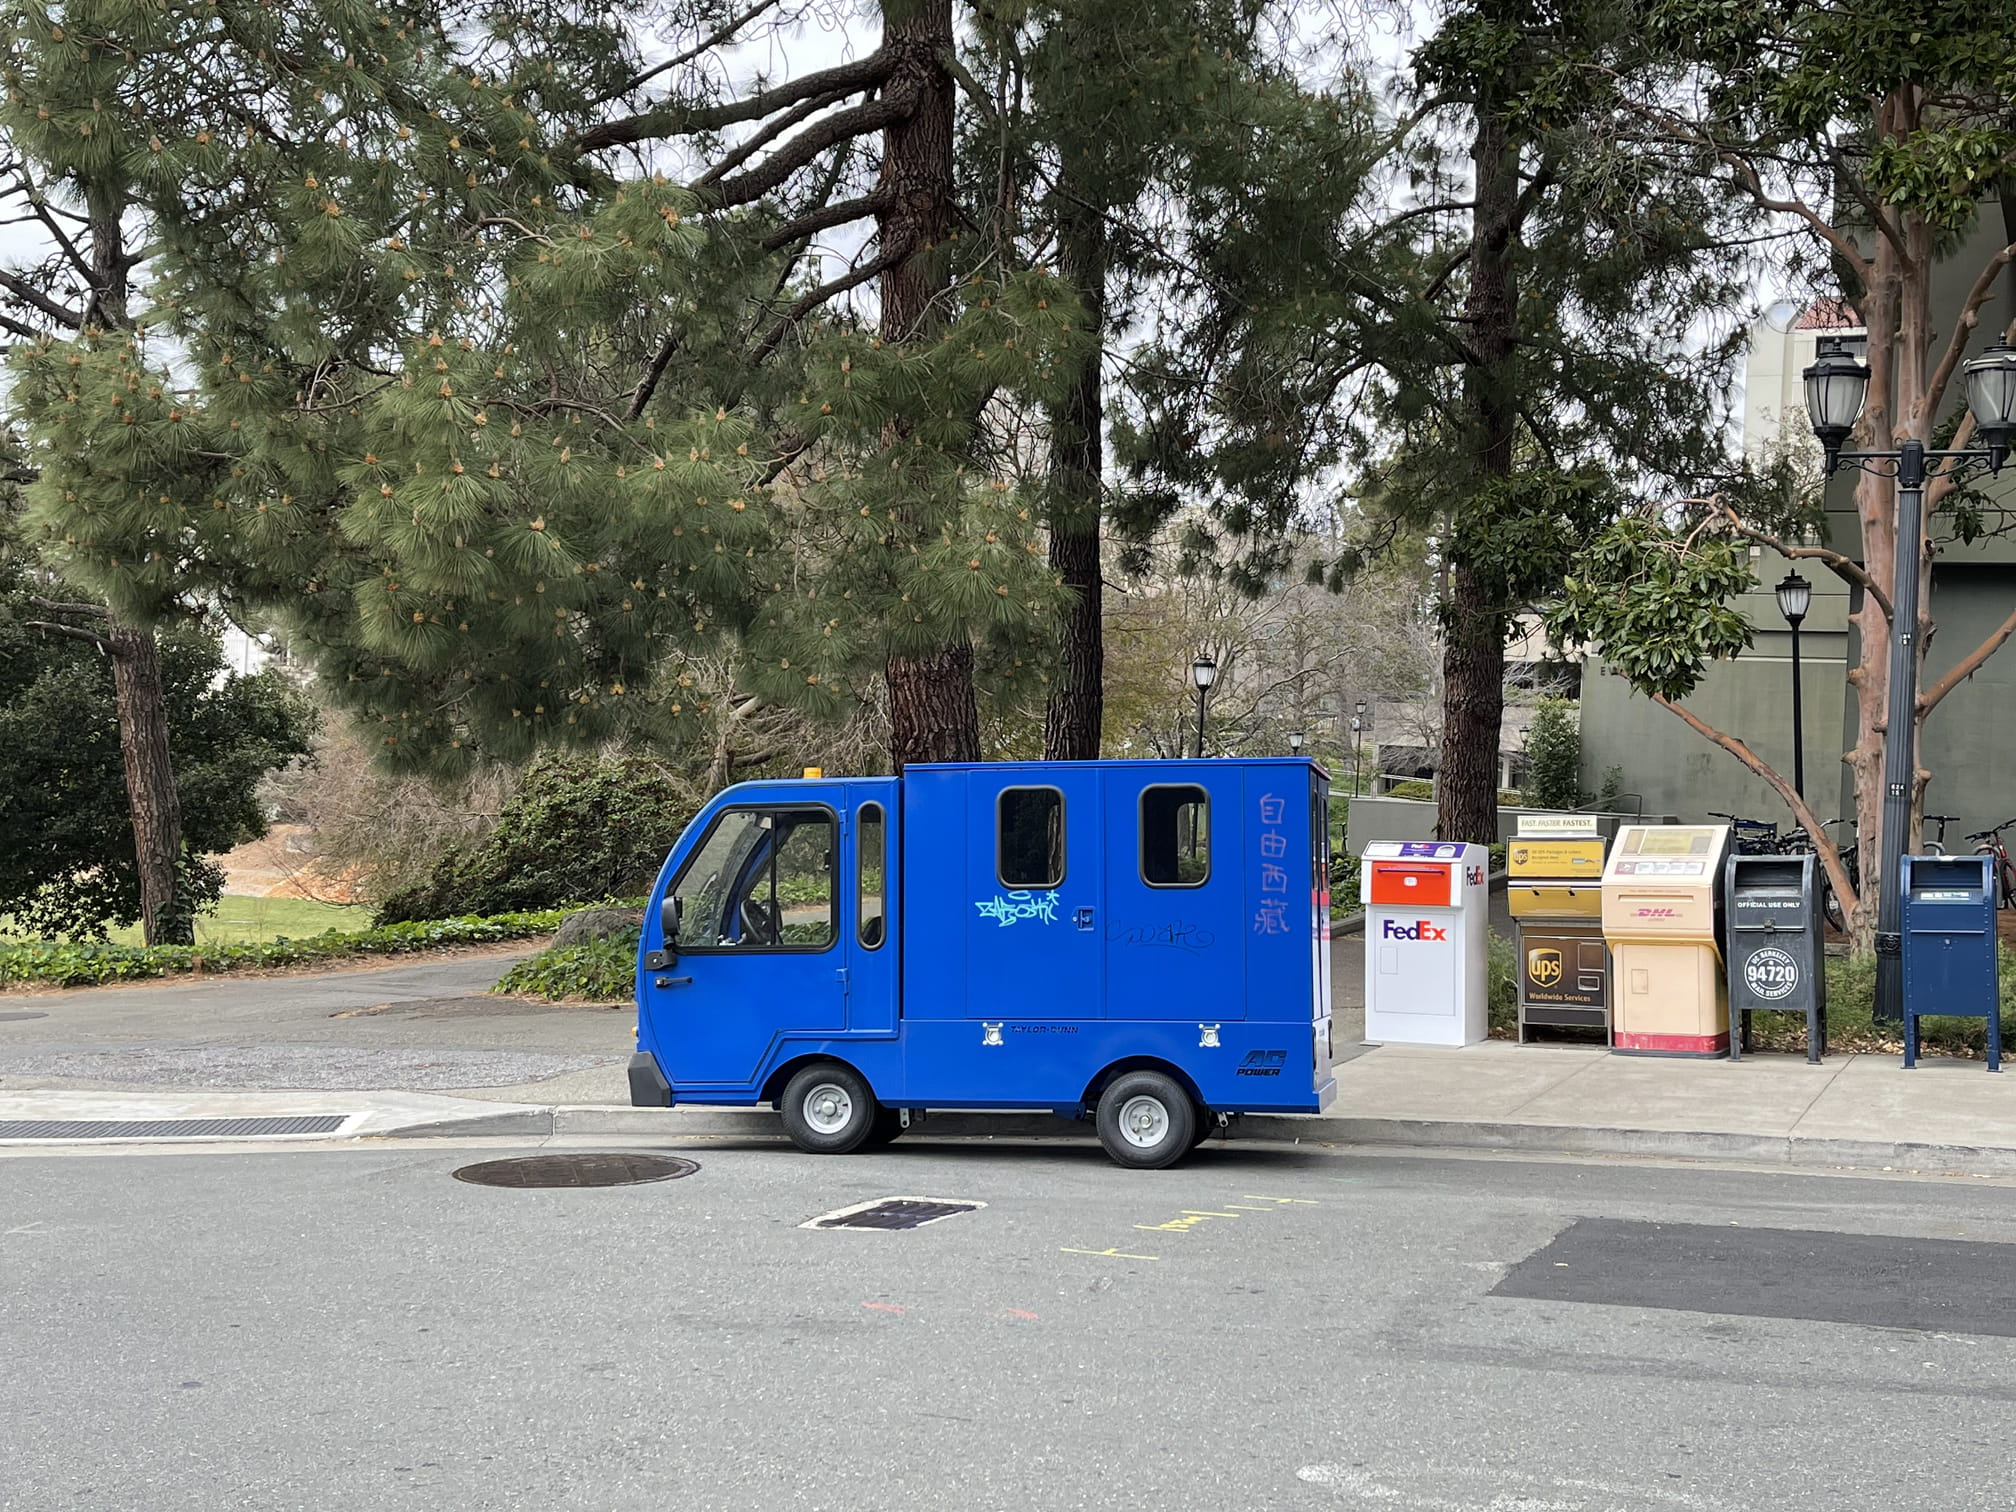 Weird little blue truck on uc berkeley campus